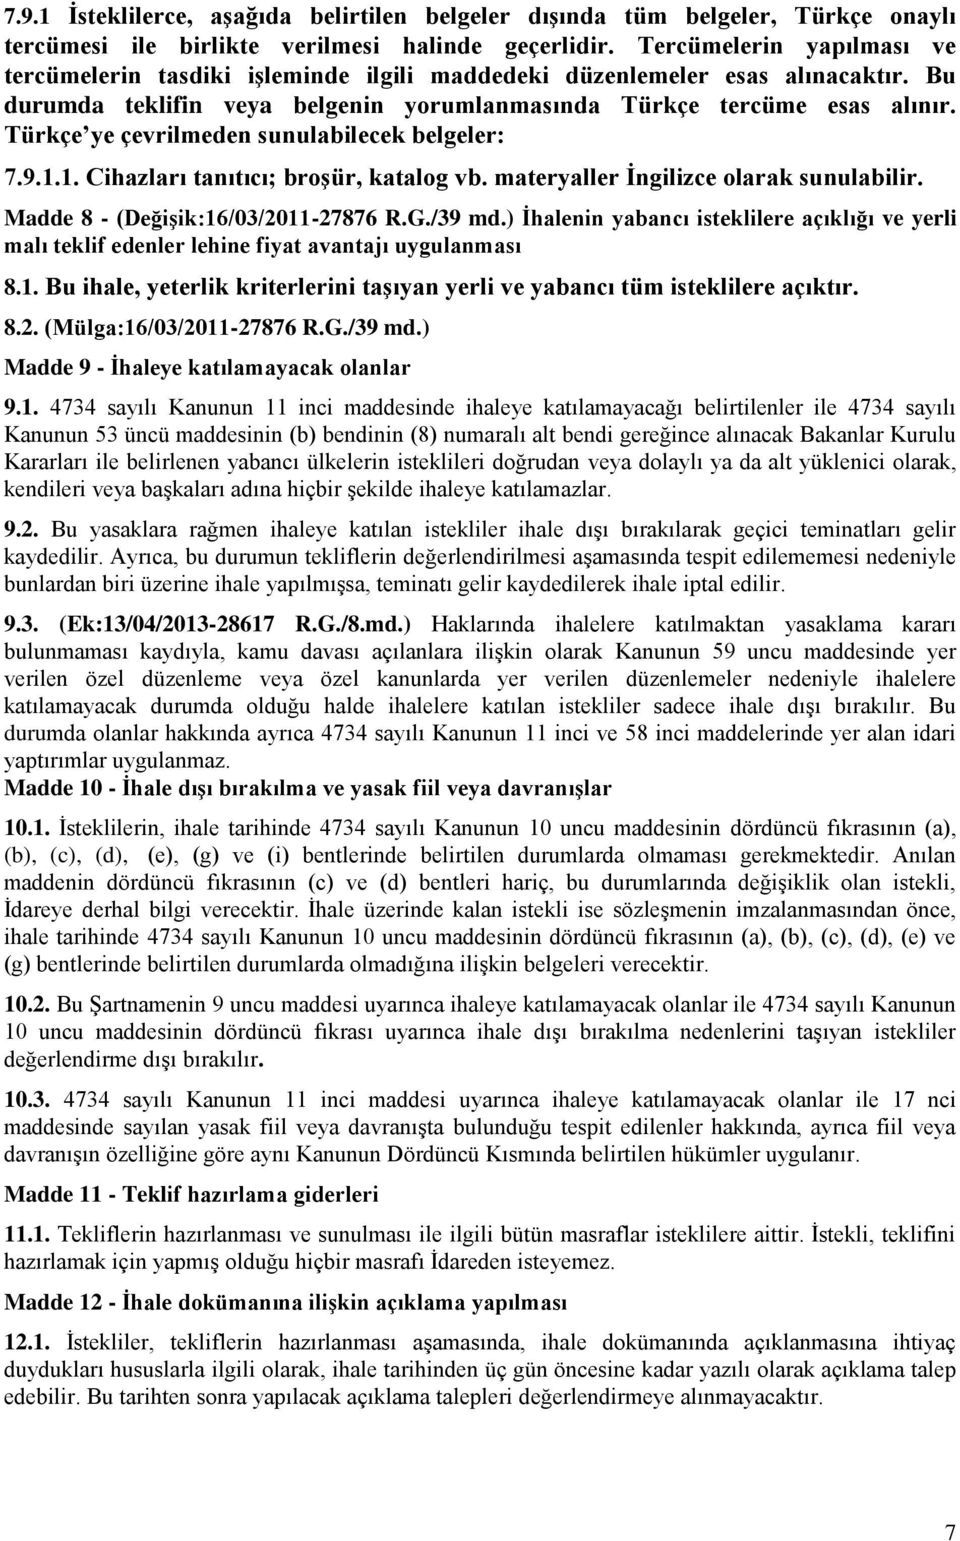 Türkçe ye çevrilmeden sunulabilecek belgeler: 7.9.1.1. Cihazları tanıtıcı; broşür, katalog vb. materyaller İngilizce olarak sunulabilir. Madde 8 - (Değişik:16/03/2011-27876 R.G./39 md.